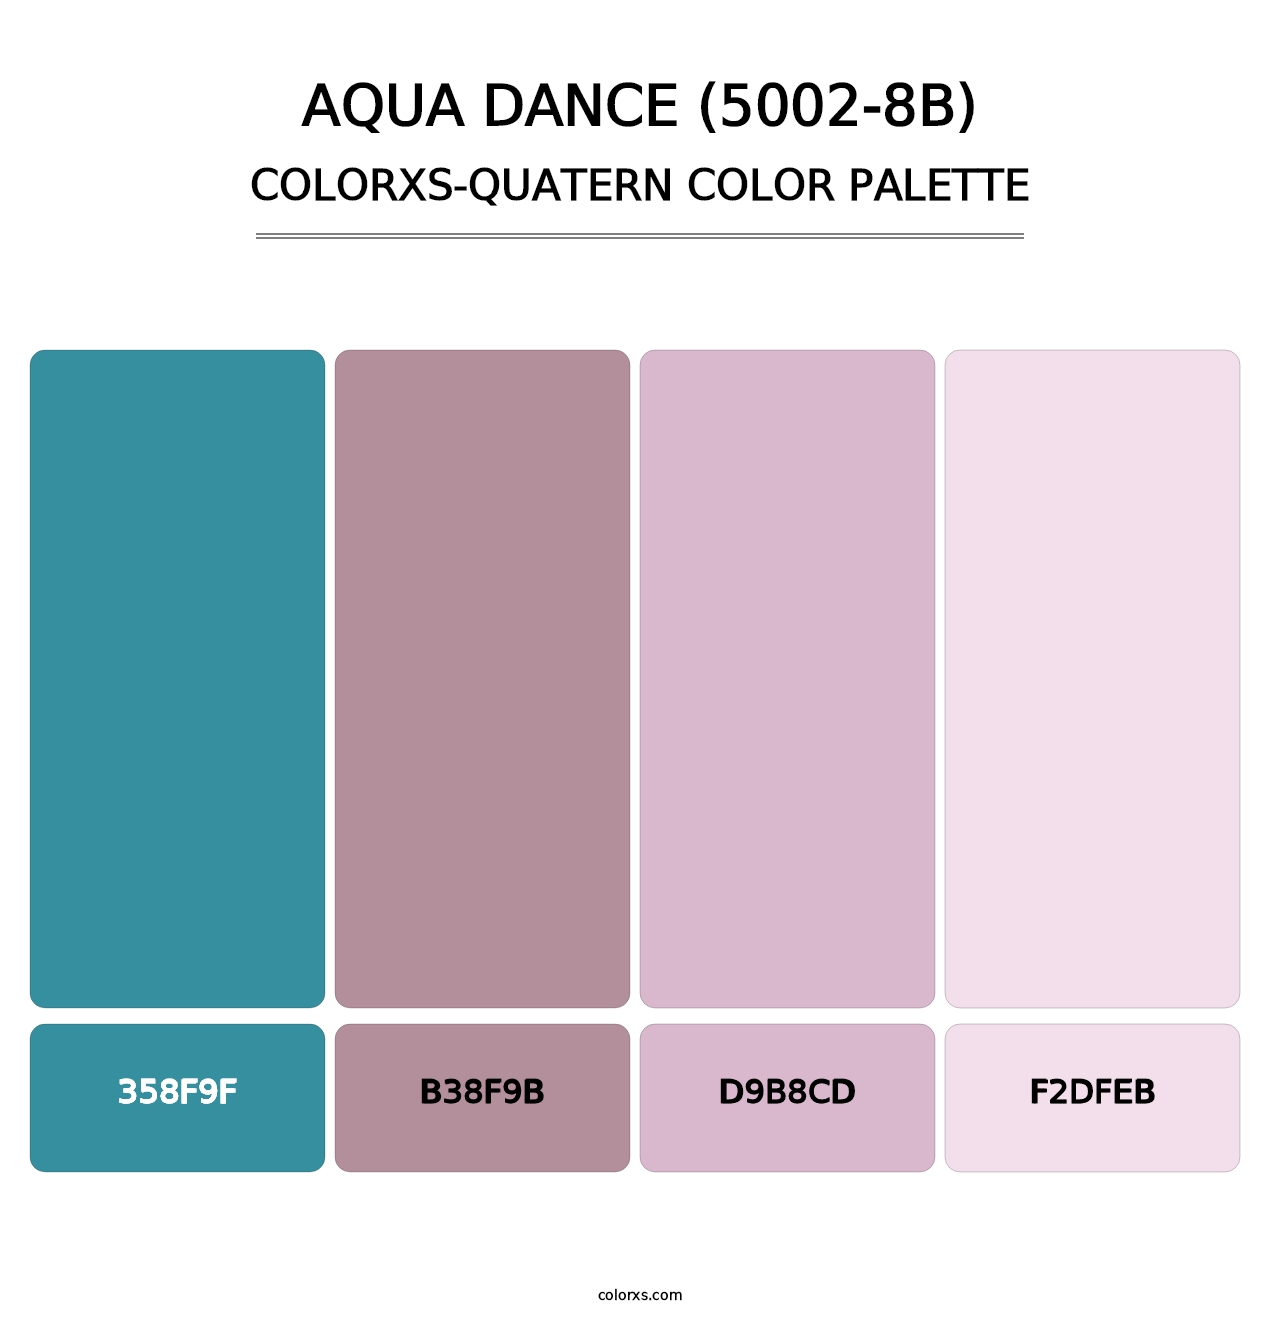 Aqua Dance (5002-8B) - Colorxs Quatern Palette